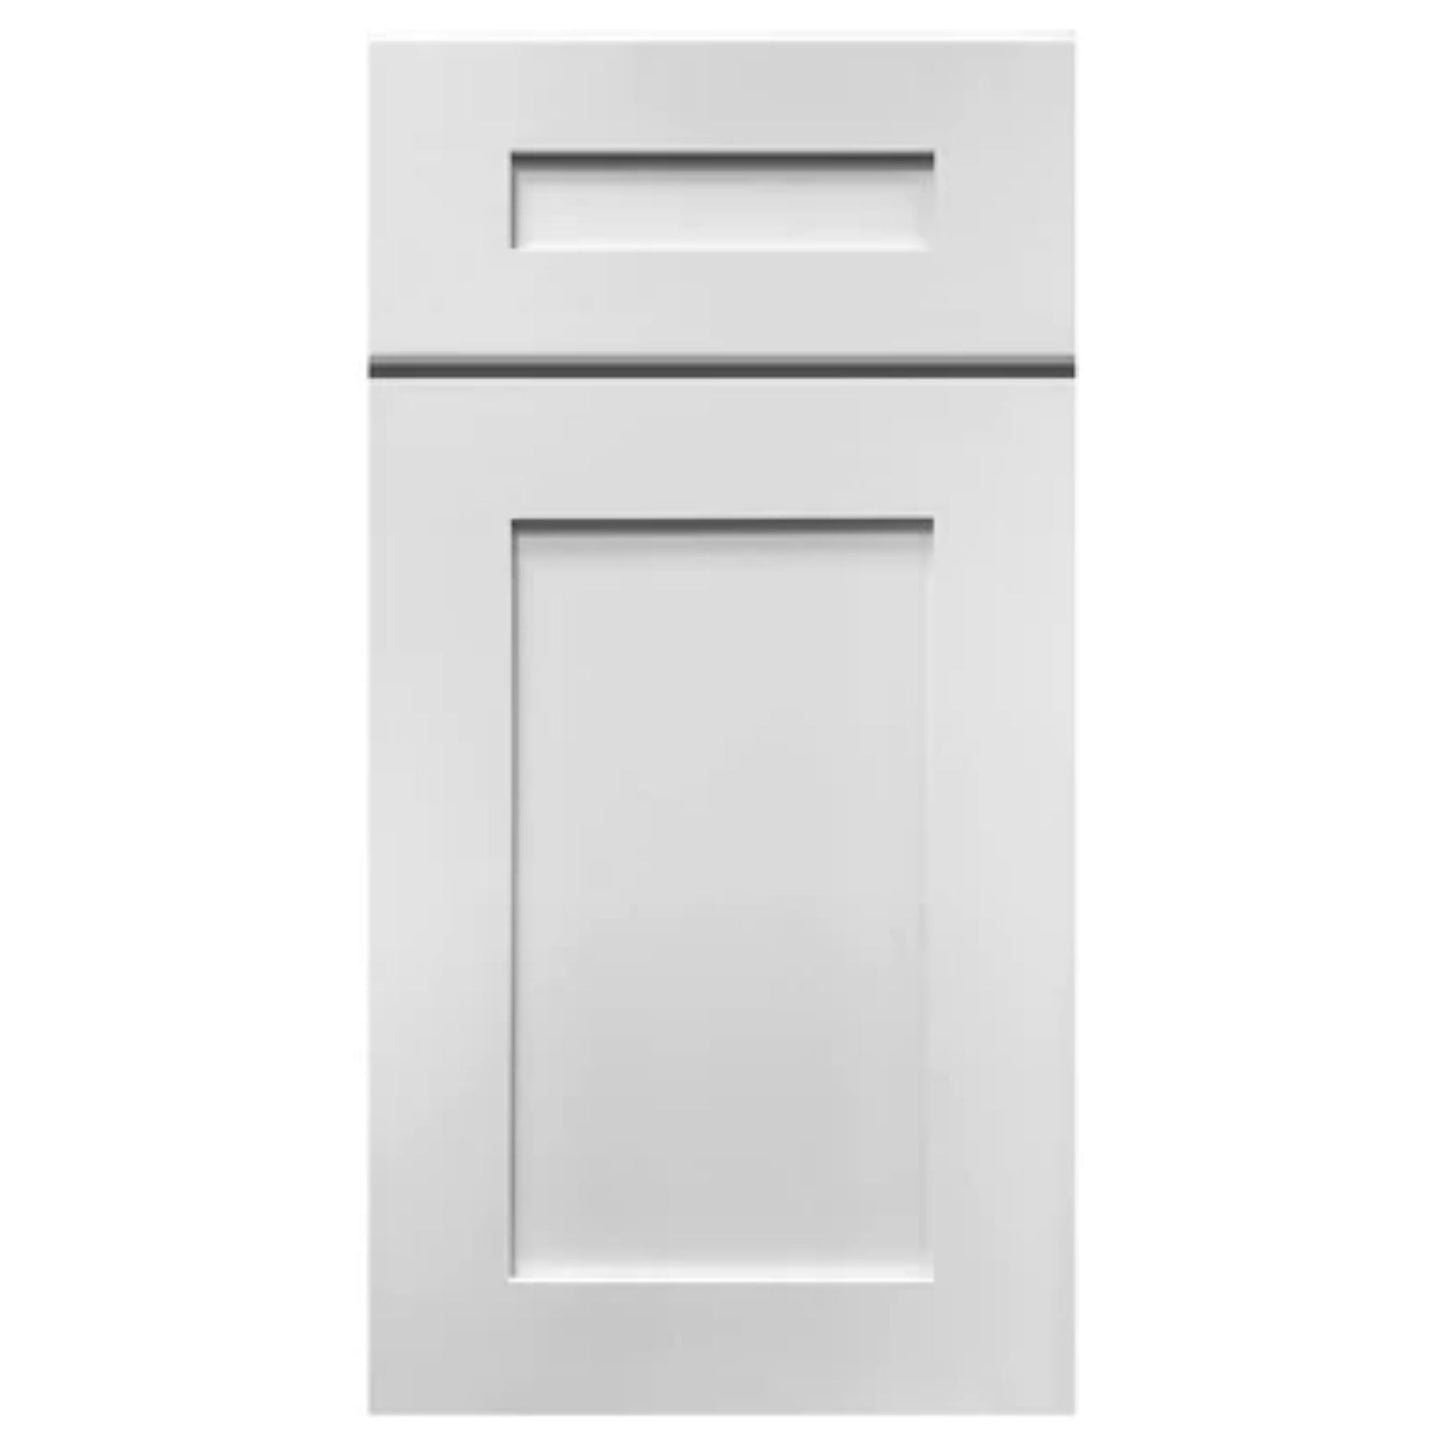 LessCare 30" x 24" x 12" Alpina White Wall Kitchen Cabinet - W3024